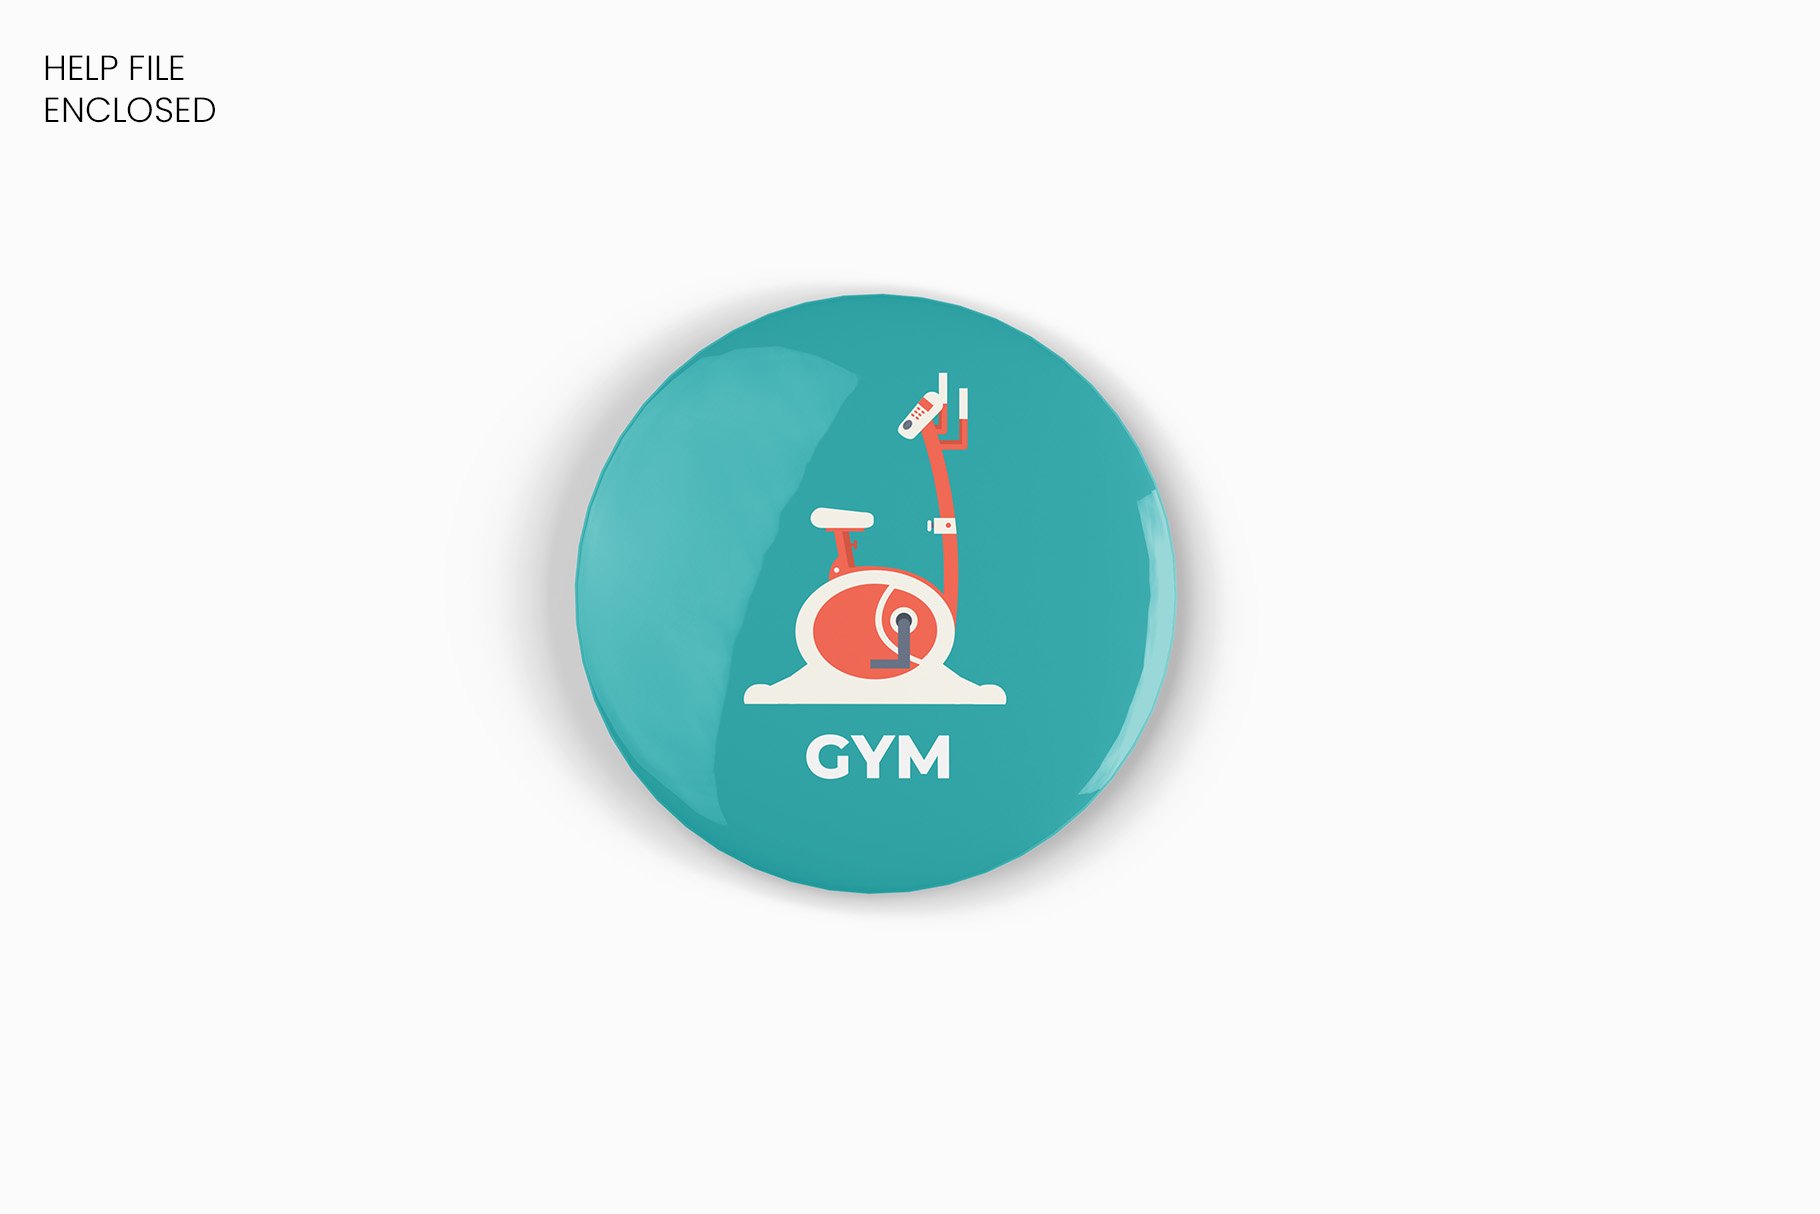 圆形按钮别针徽章胸牌设计标志Logo贴图样机素材 Pin Button Badge Mockup – 4 Views